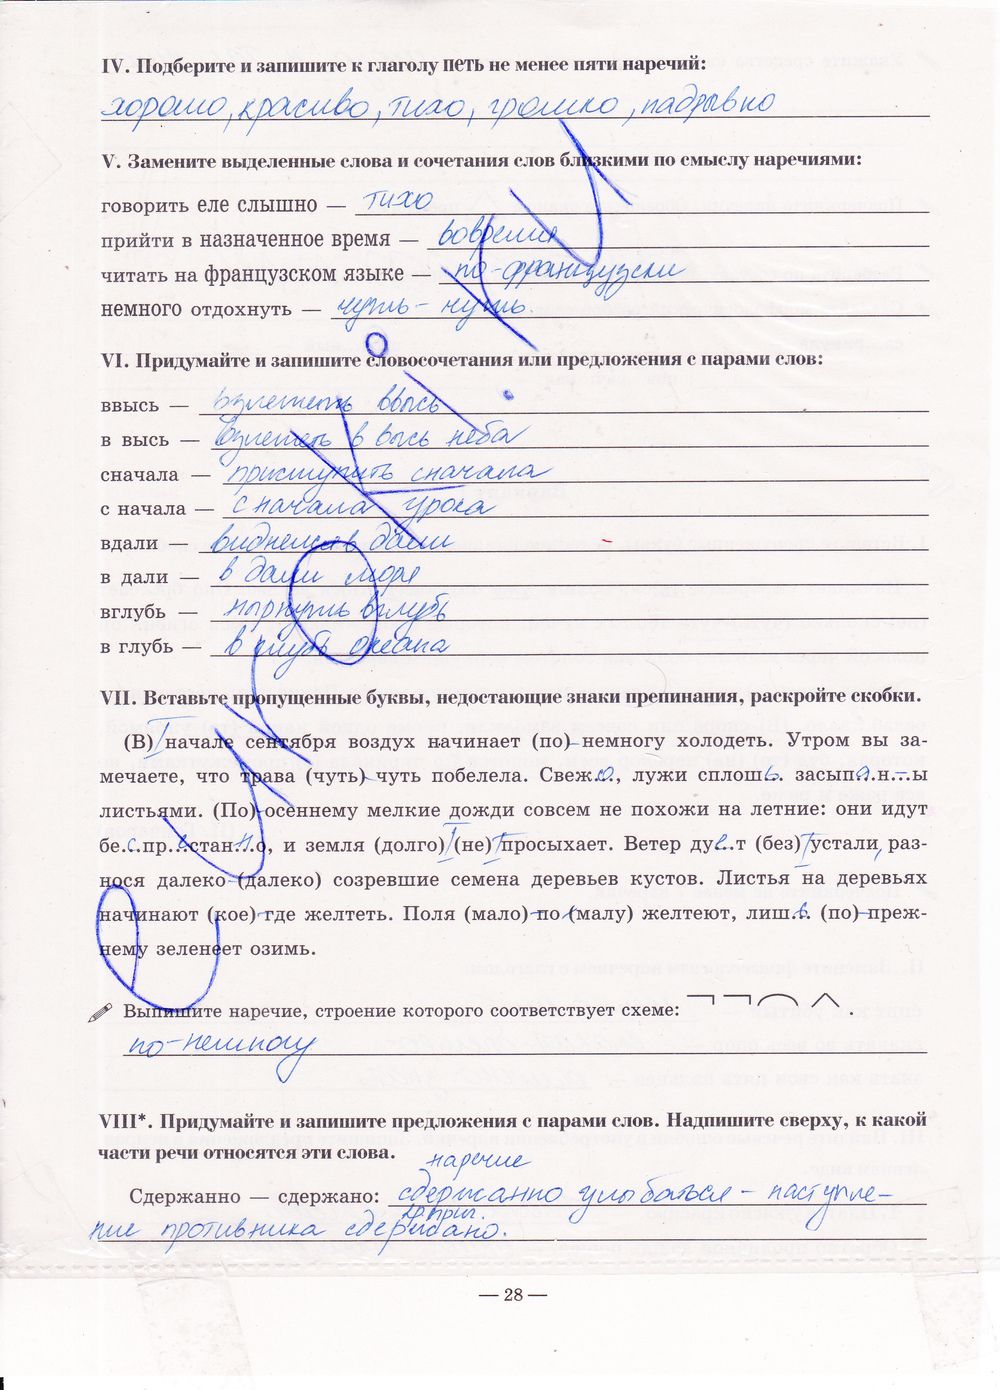 ГДЗ Русский язык 7 класс - стр. 28